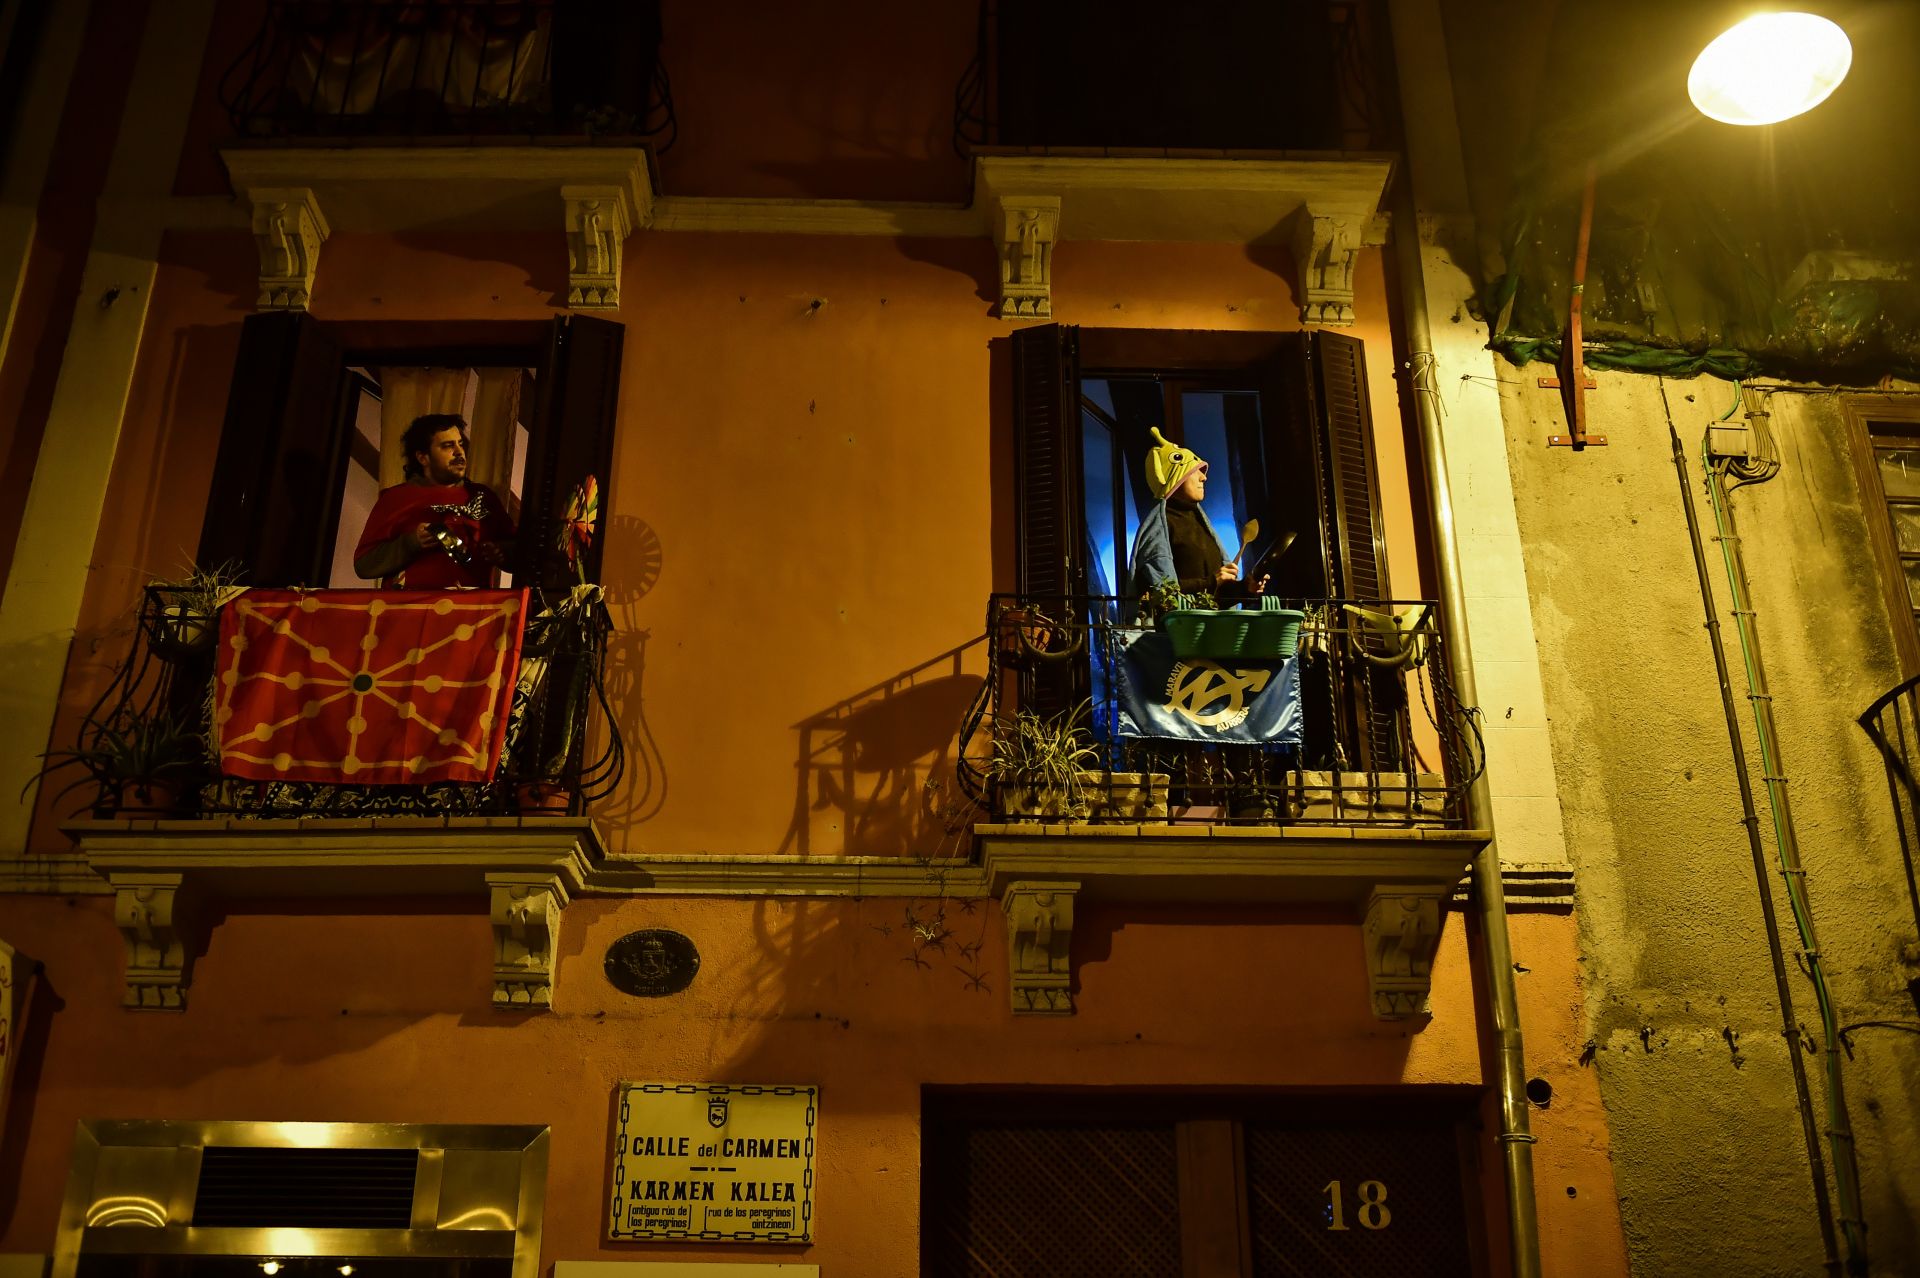 Испанци под карантина излязоха на балконите си, за да дрънчат с тенджери и тигани като протест